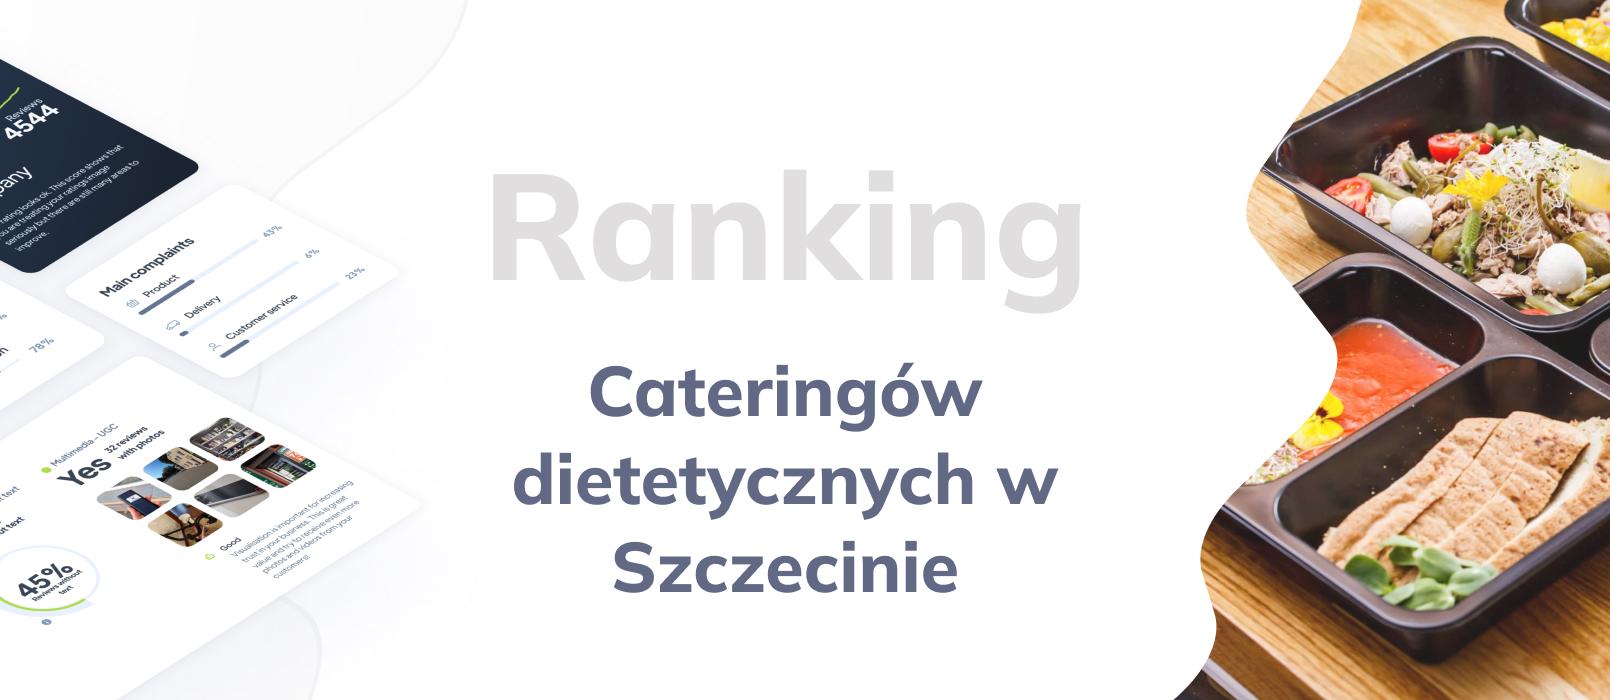 Cateringi dietetyczne w Szczecinie - ranking TOP 10